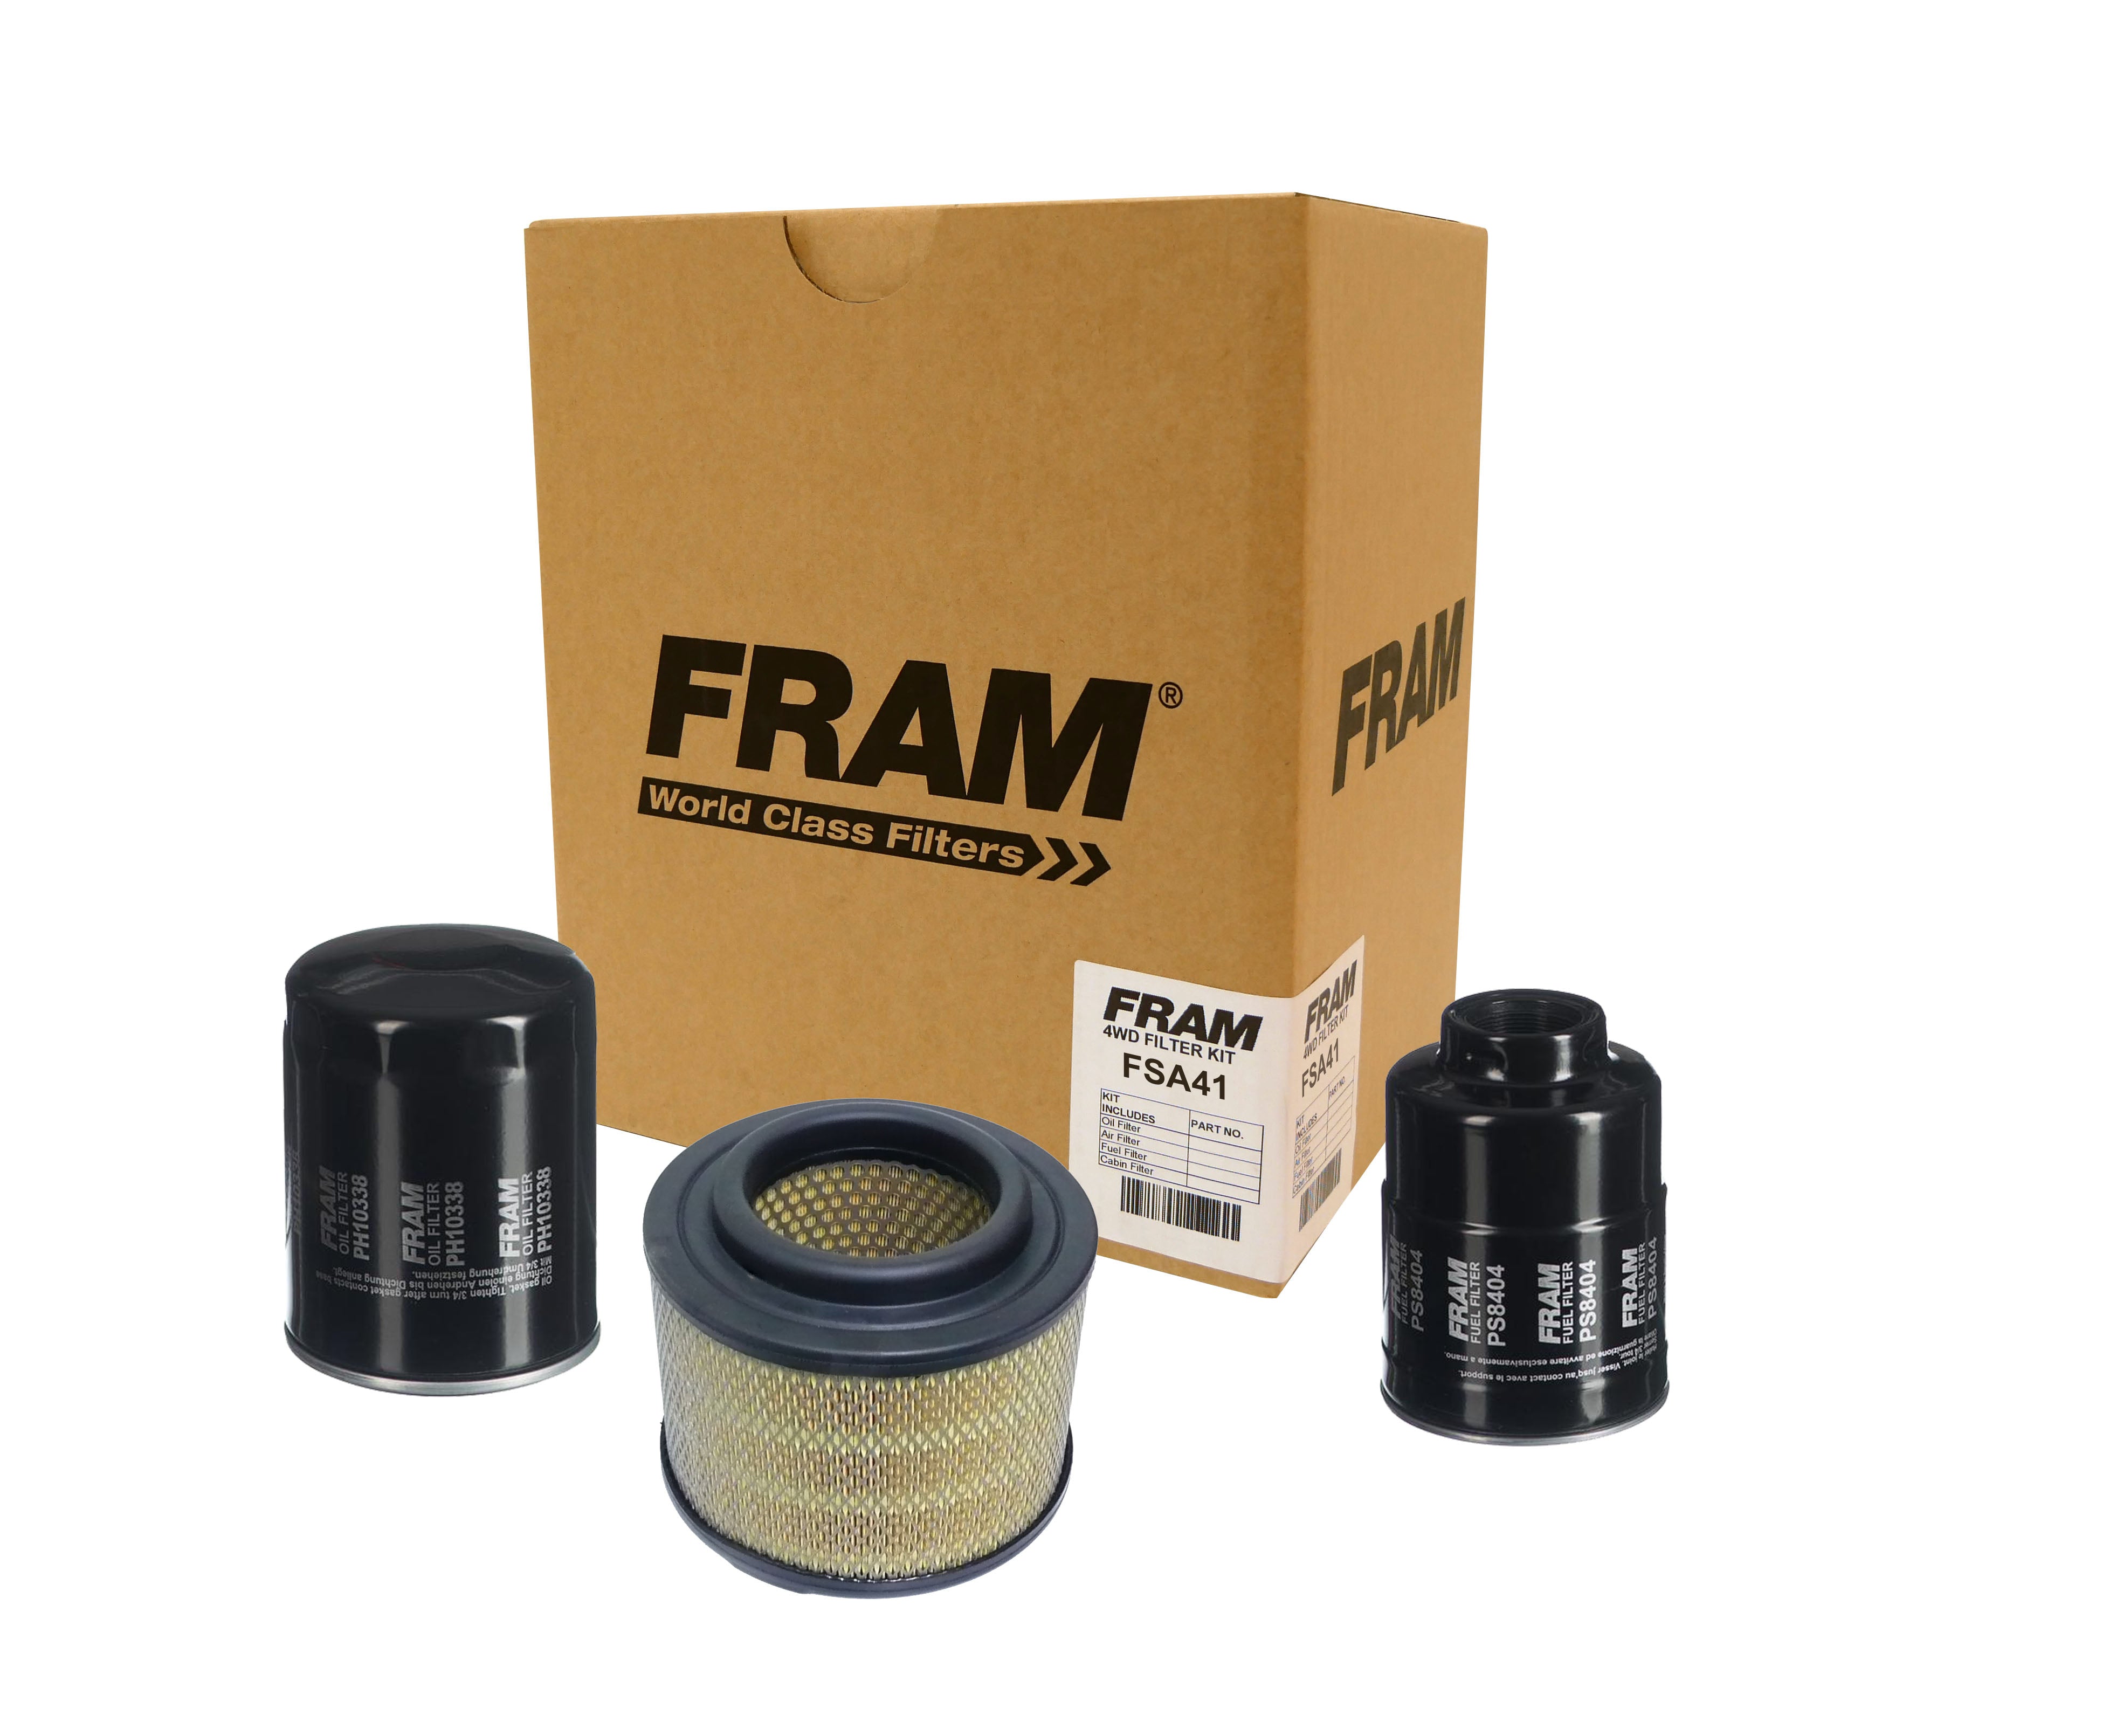 FRAM 4wd Filter Kit for Mazda BT-50 DX | FRAM